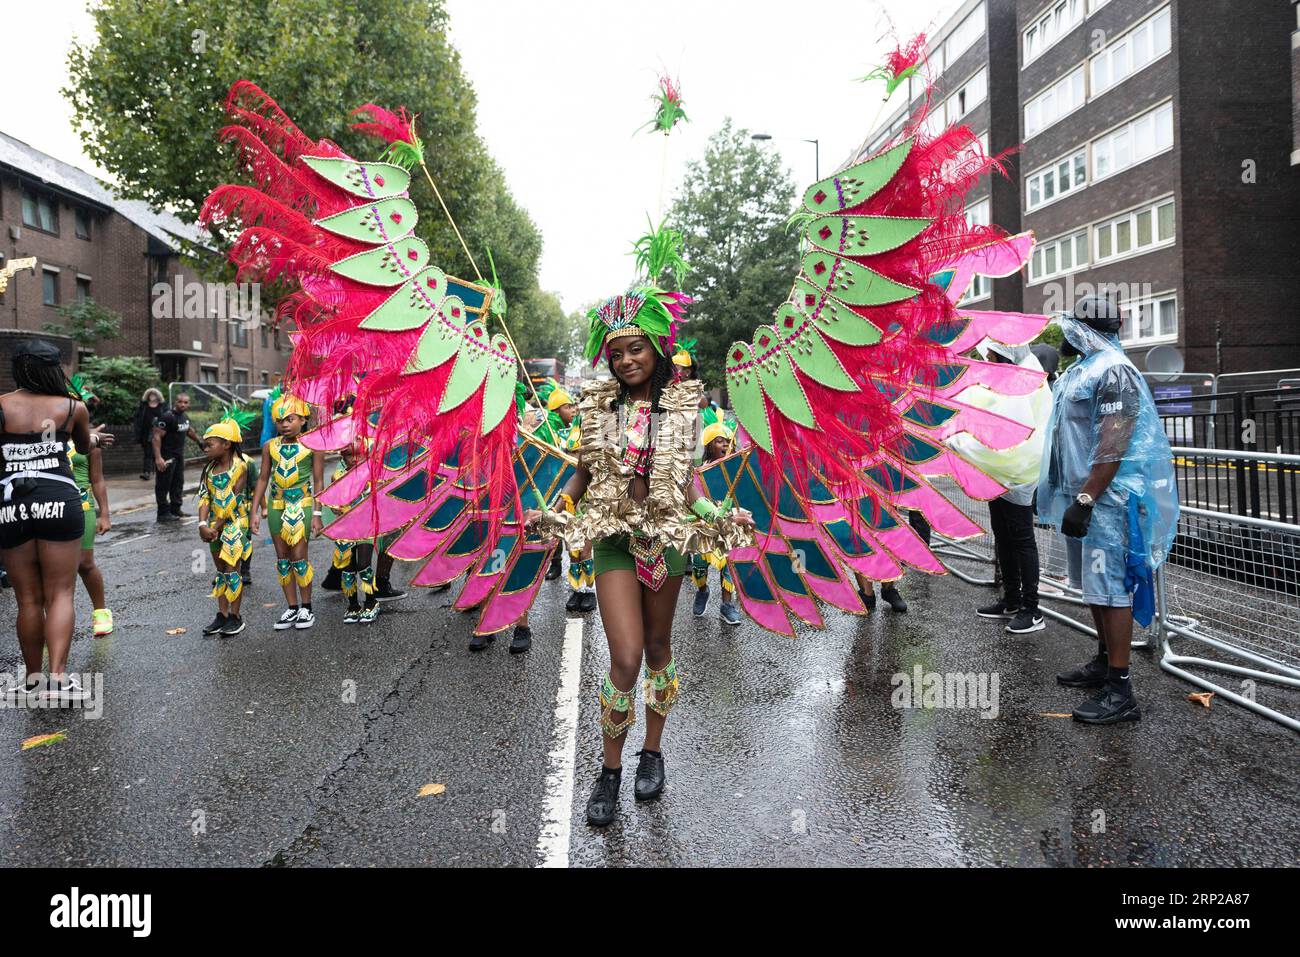 (180826) -- LONDRES, 26 août 2018 -- Un artiste participe à la parade de la Journée des enfants du Carnaval annuel de Notting Hill à Londres, en Grande-Bretagne, le 26 août 2018. Le Carnaval de Notting Hill est le plus grand festival de rue en Europe et a vu le jour dans les années 1960 comme un moyen pour les communautés afro-caribéennes de célébrer leurs propres cultures et traditions. BRITAIN-LONDRES-NOTTING HILL CARNIVAL-CHILDREN S DAY PARADE RAYXTANG PUBLICATIONXNOTXINXCHN Banque D'Images